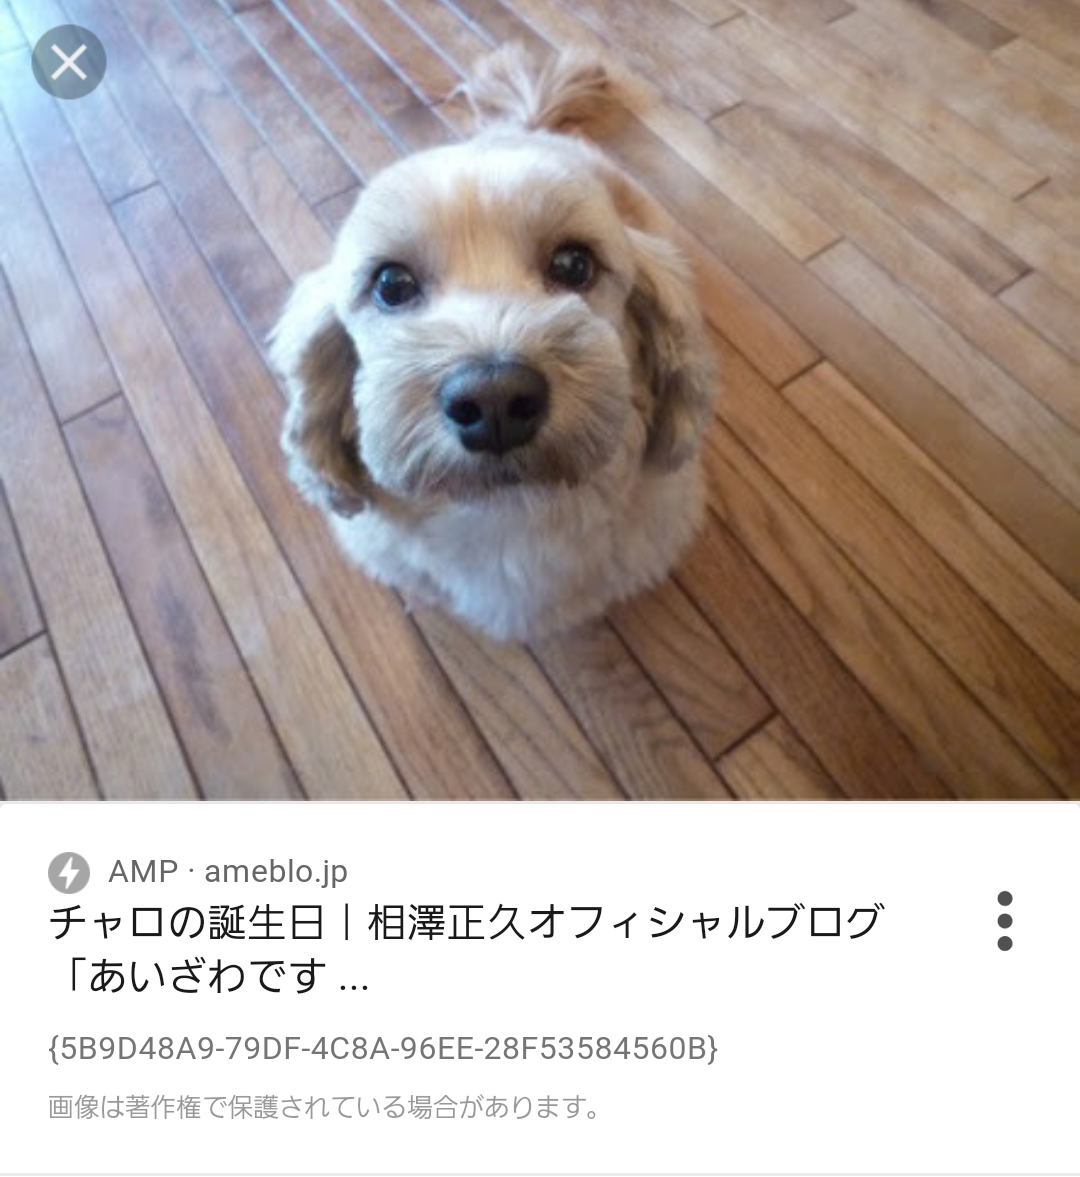 サンミュージック 相澤社長の愛犬